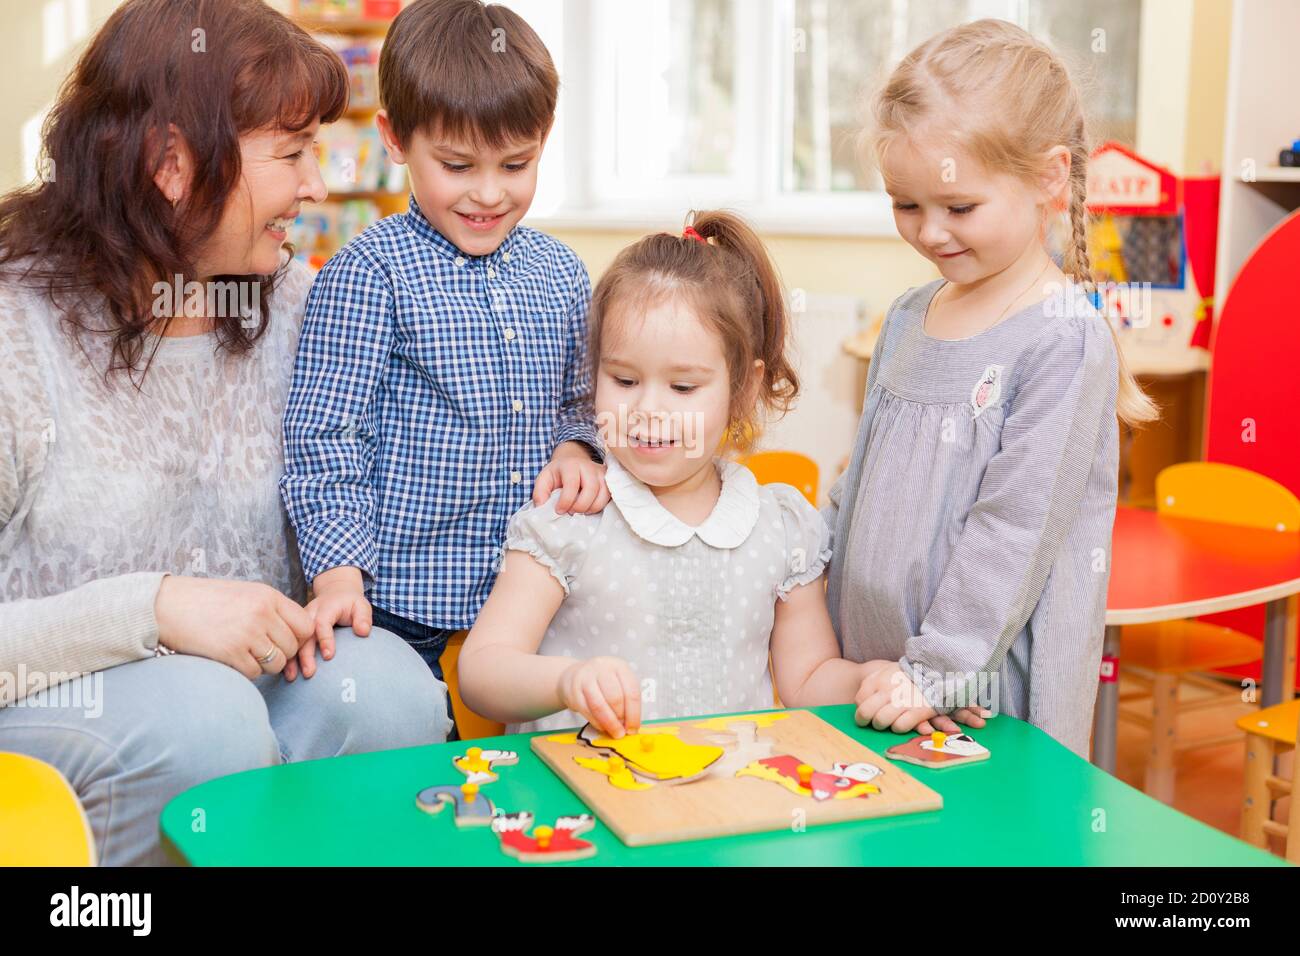 Jolie fille caucasienne, élève de maternelle, collectez le puzzle dans la salle de classe à la table verte. Le professeur et deux élèves qui regardent et sourient. Horizo Banque D'Images